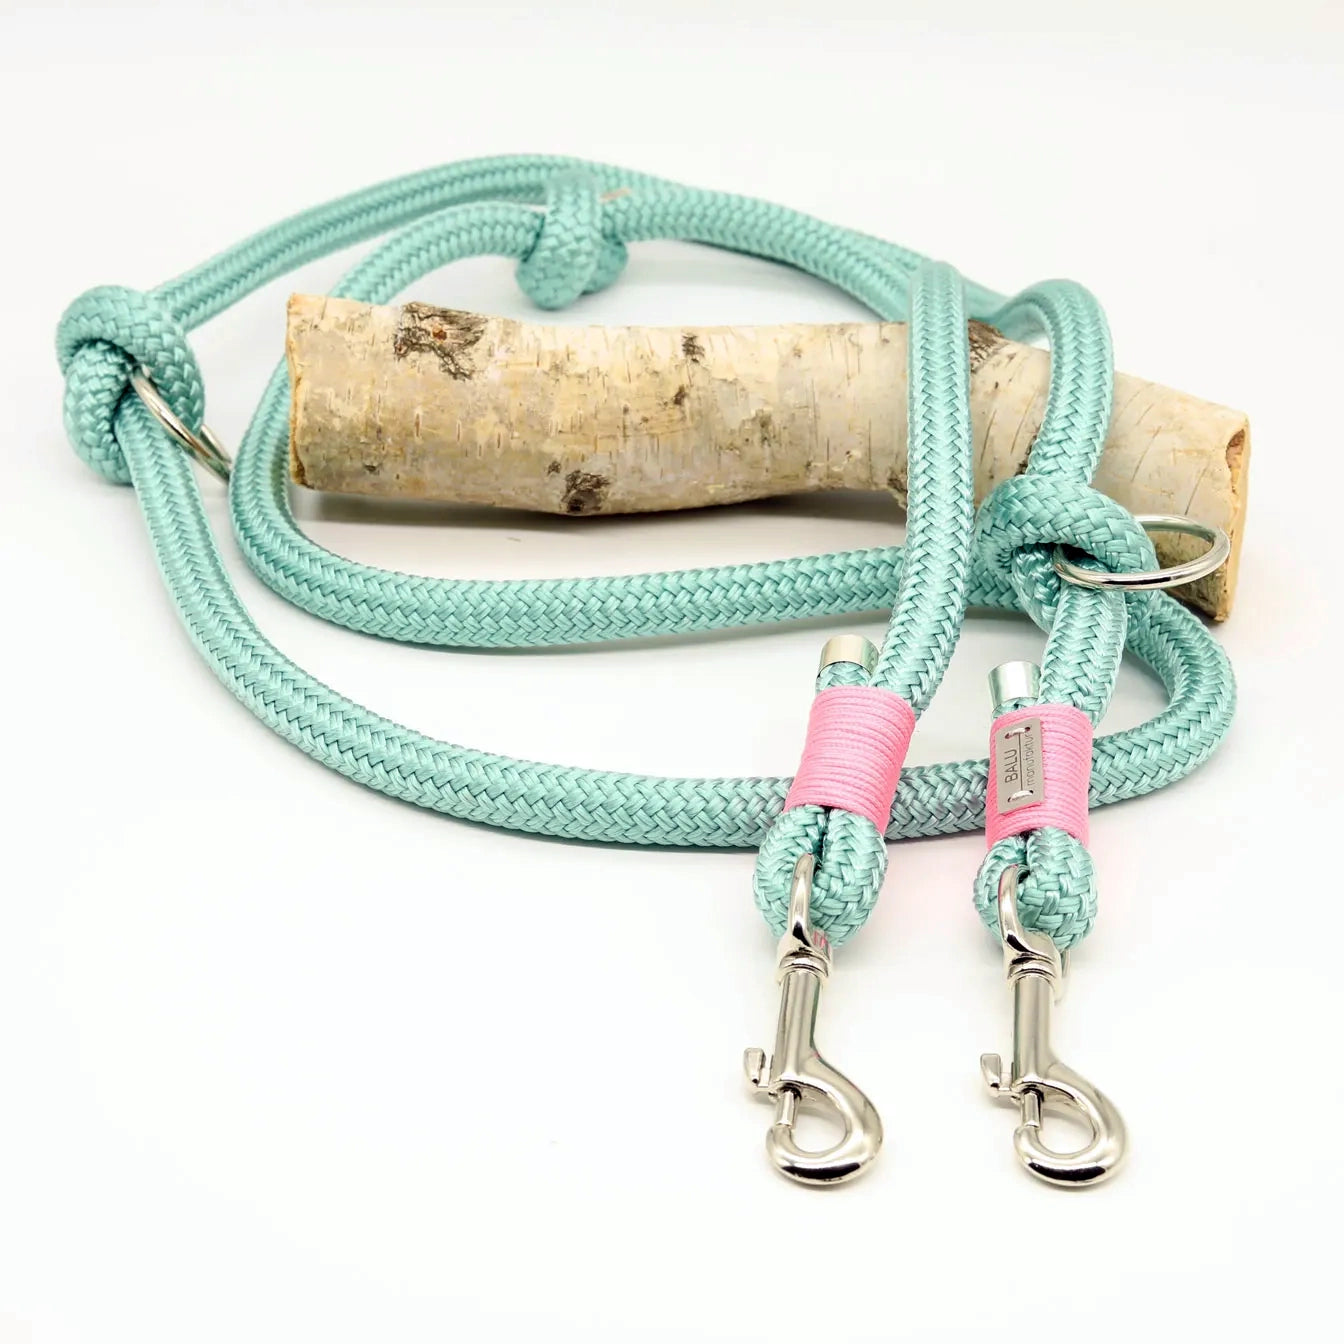 Verstellbare Hundeleine aus Seil 2m in mintgrün mit silbernen Metallelementen